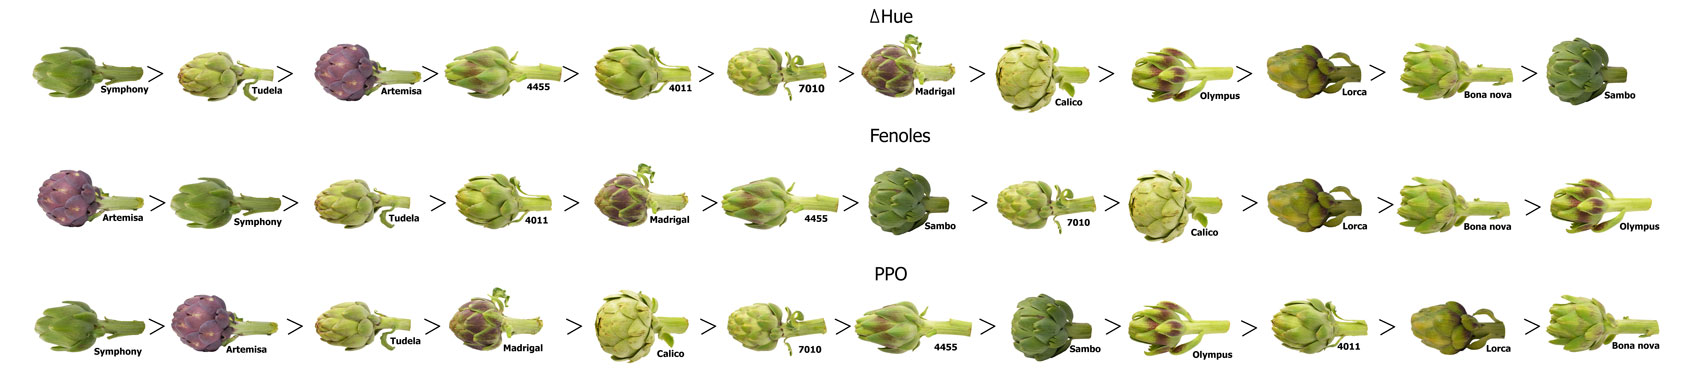 Fotografía 3. Escala de las 12 variedades de alcachofa estudiadas con respecto nivel de pardeamiento (ΔHue), Fenoles y PPO...